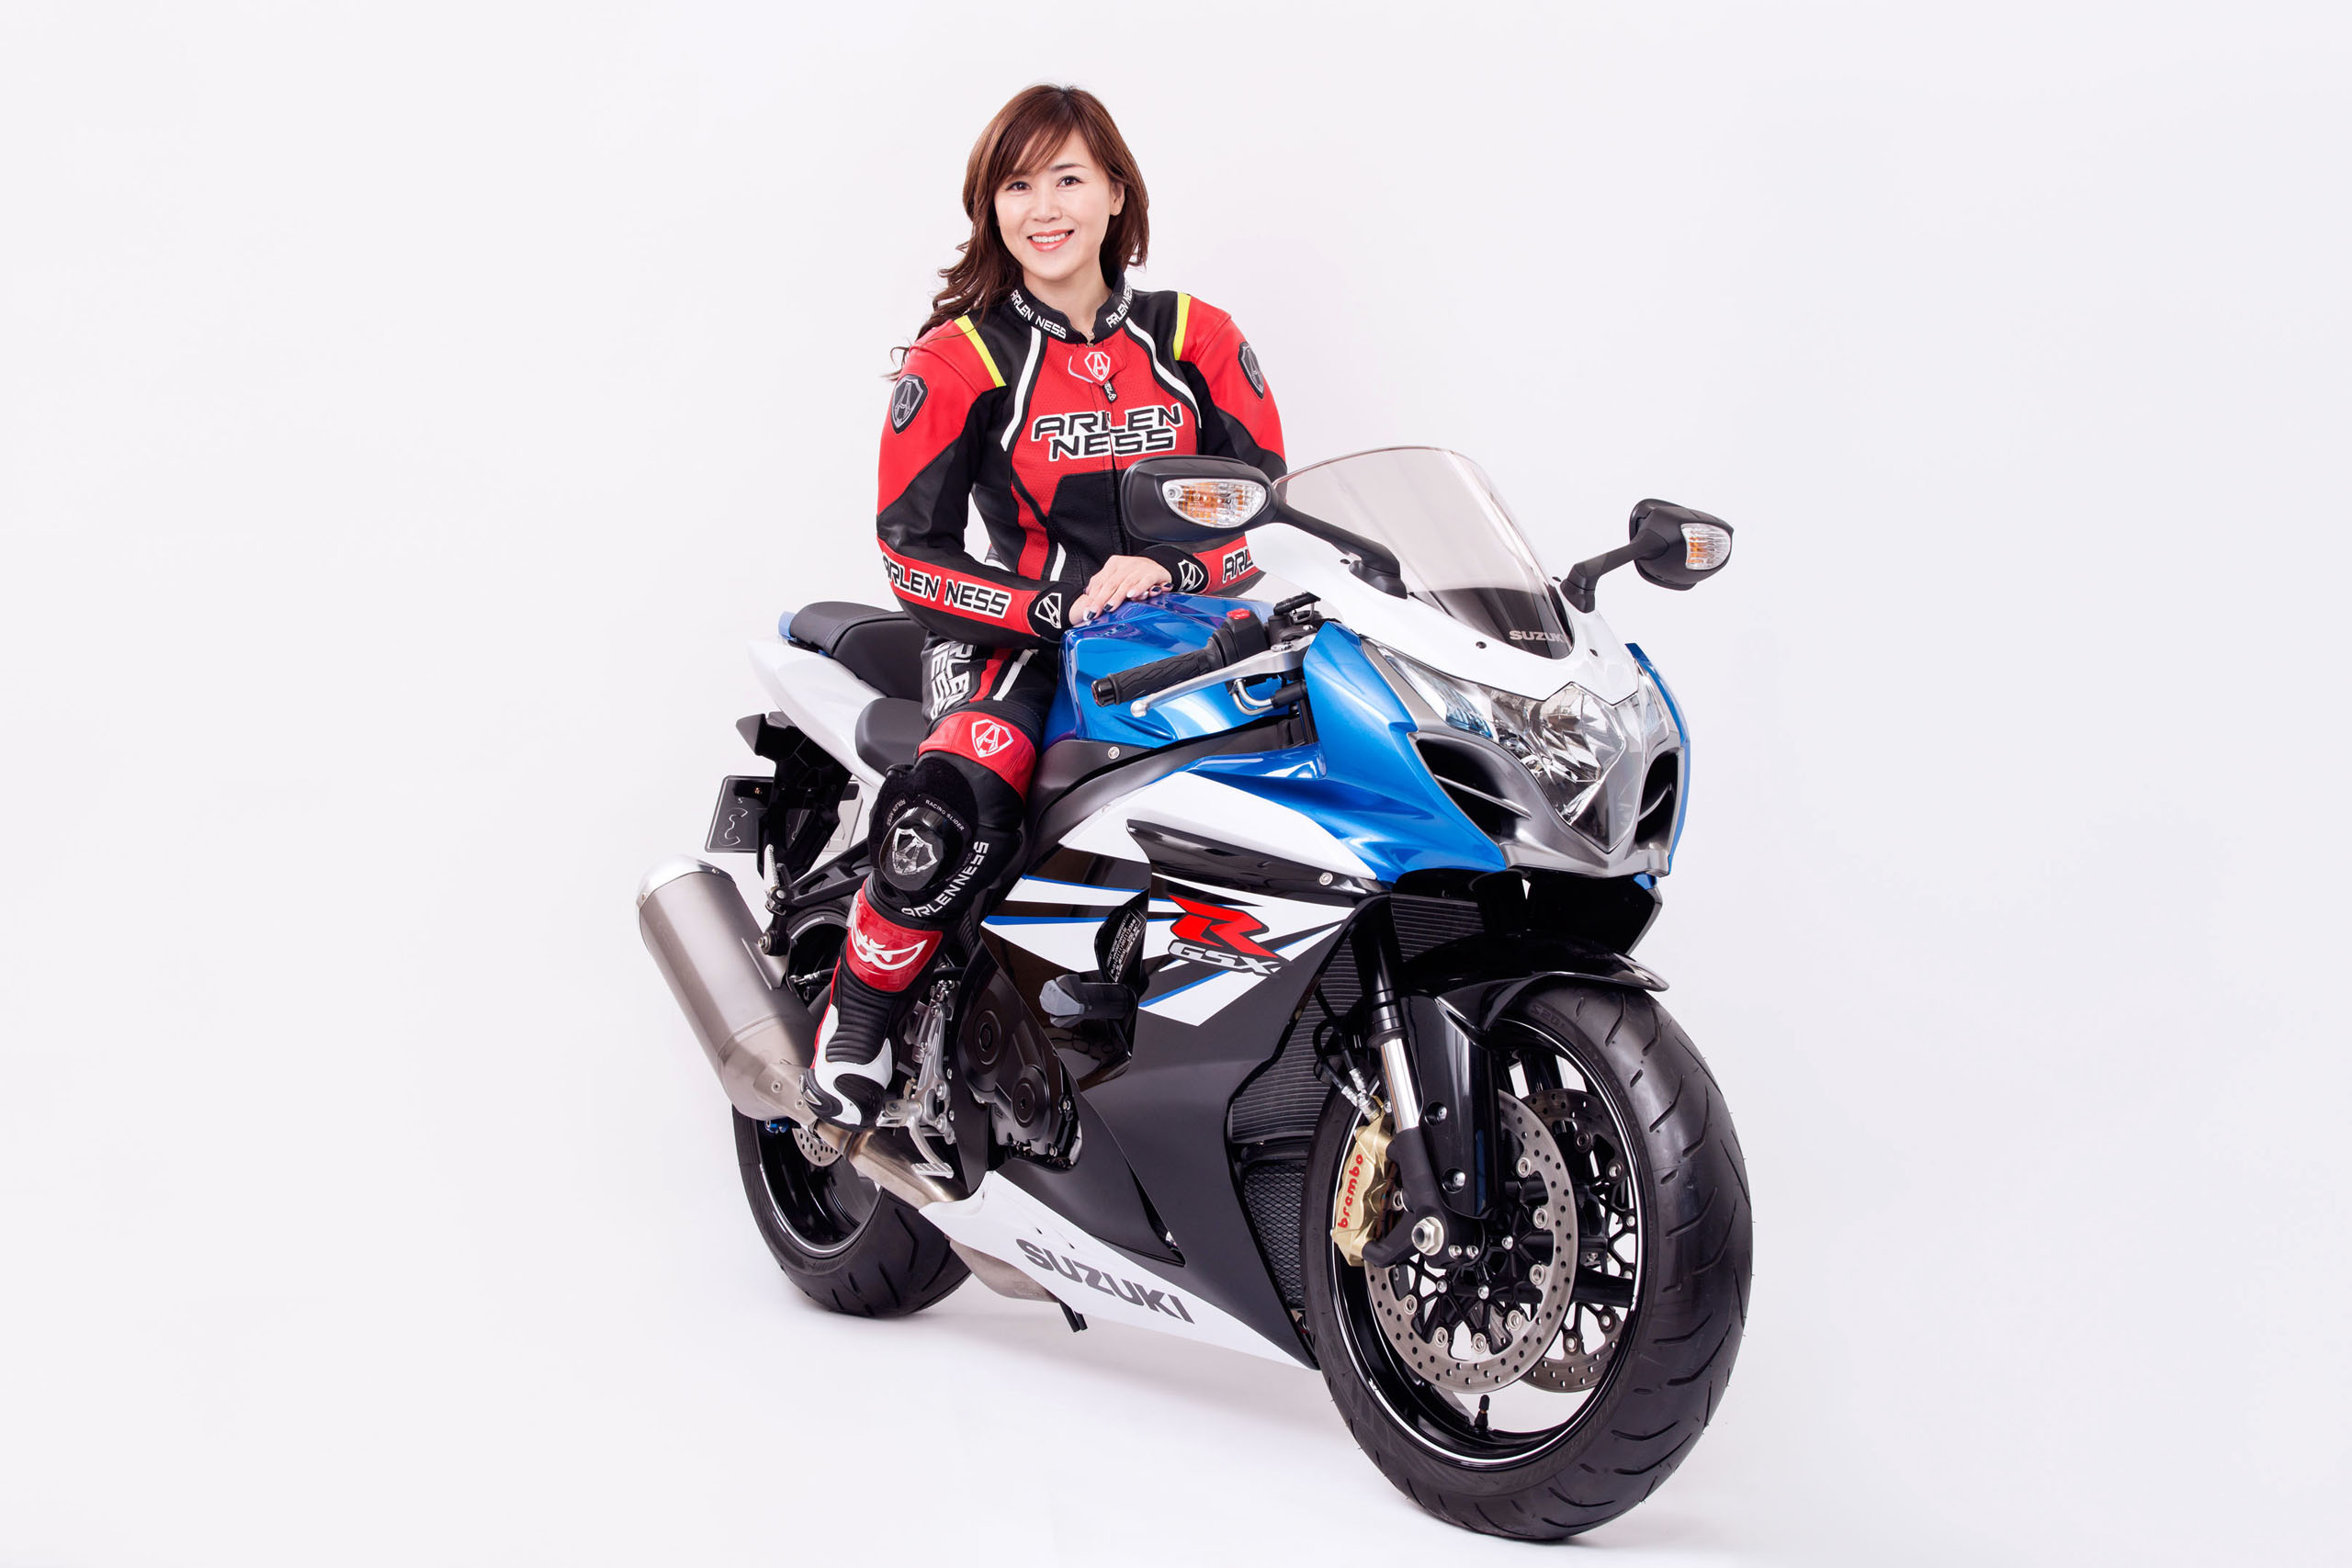 下島由美さん and her Suzuki GSX-R